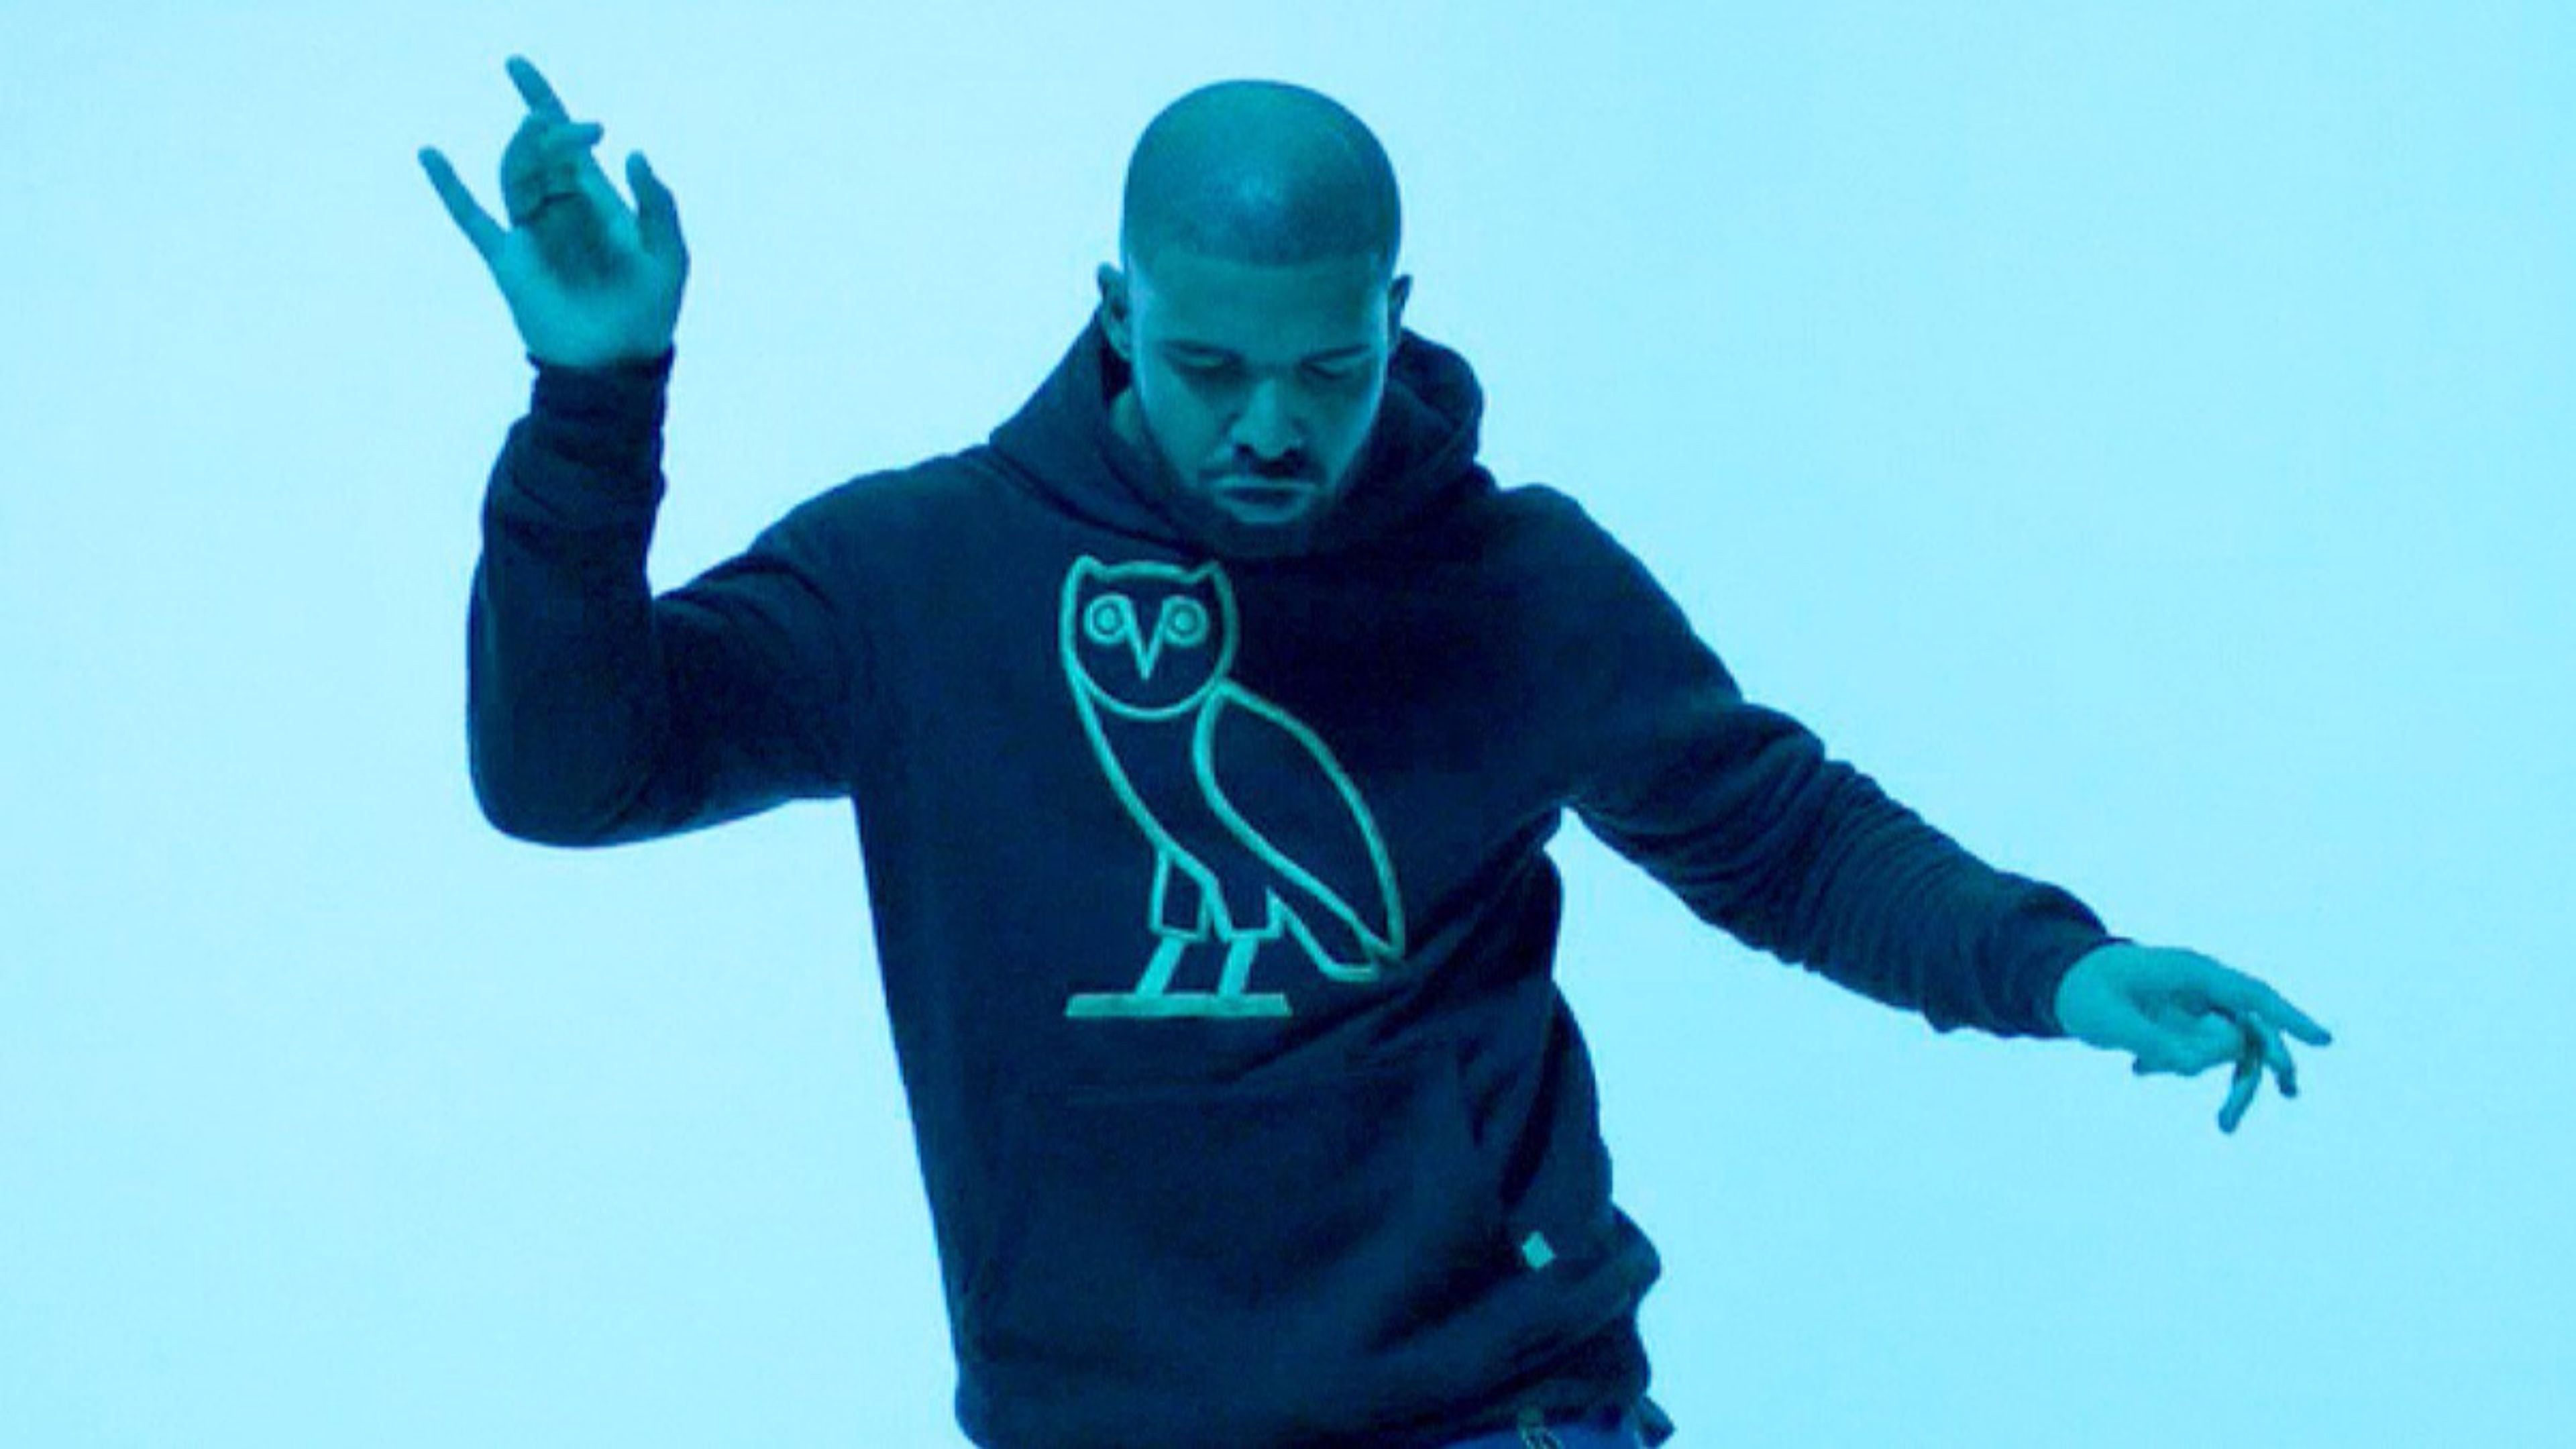 Drake In Dancing Movement Wearing Owl Print T-Shirt In Light Wallpaper K 2K Drake